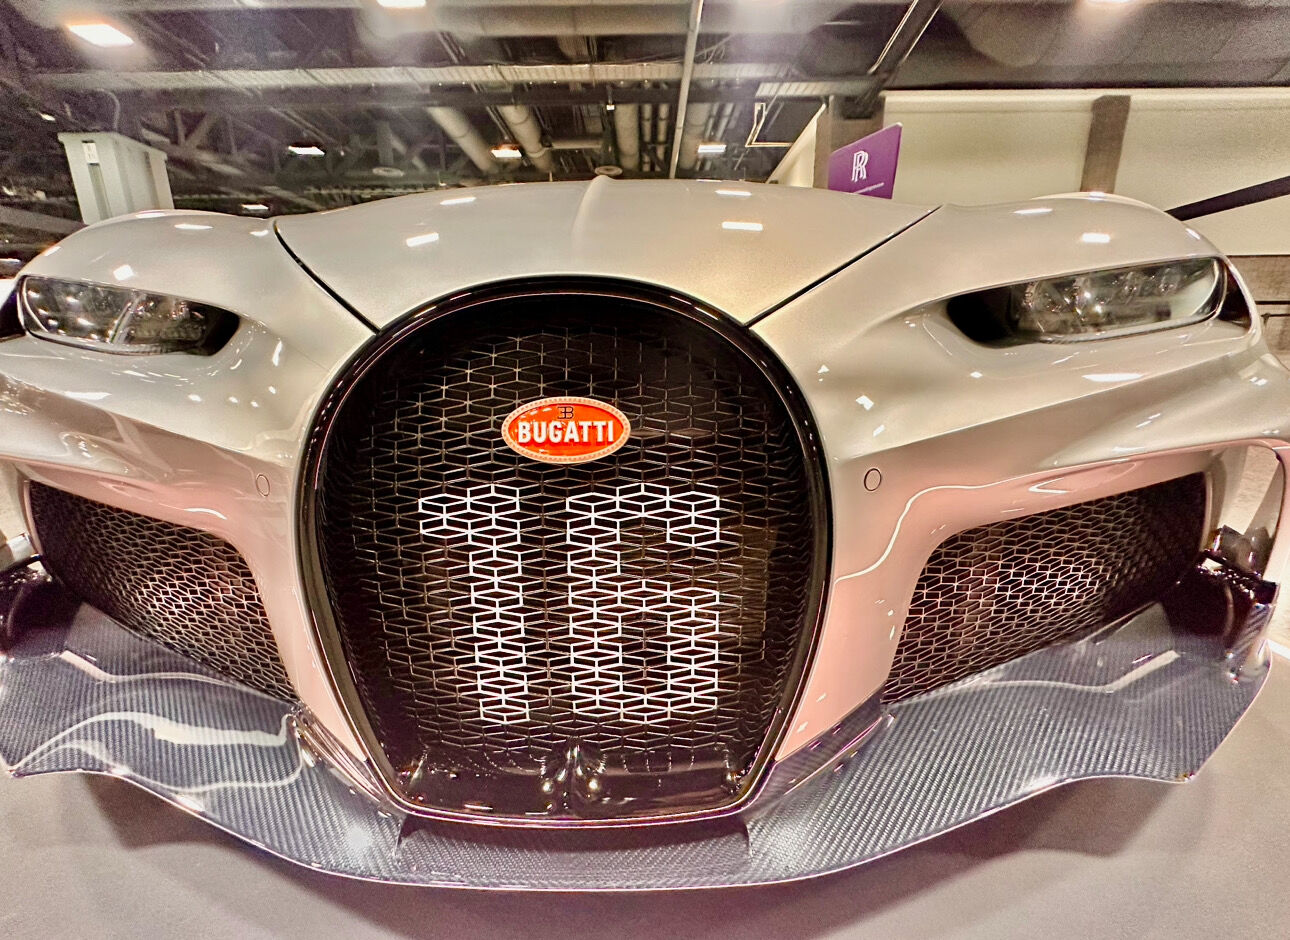 Bugatti car at Washington DC Auto Show